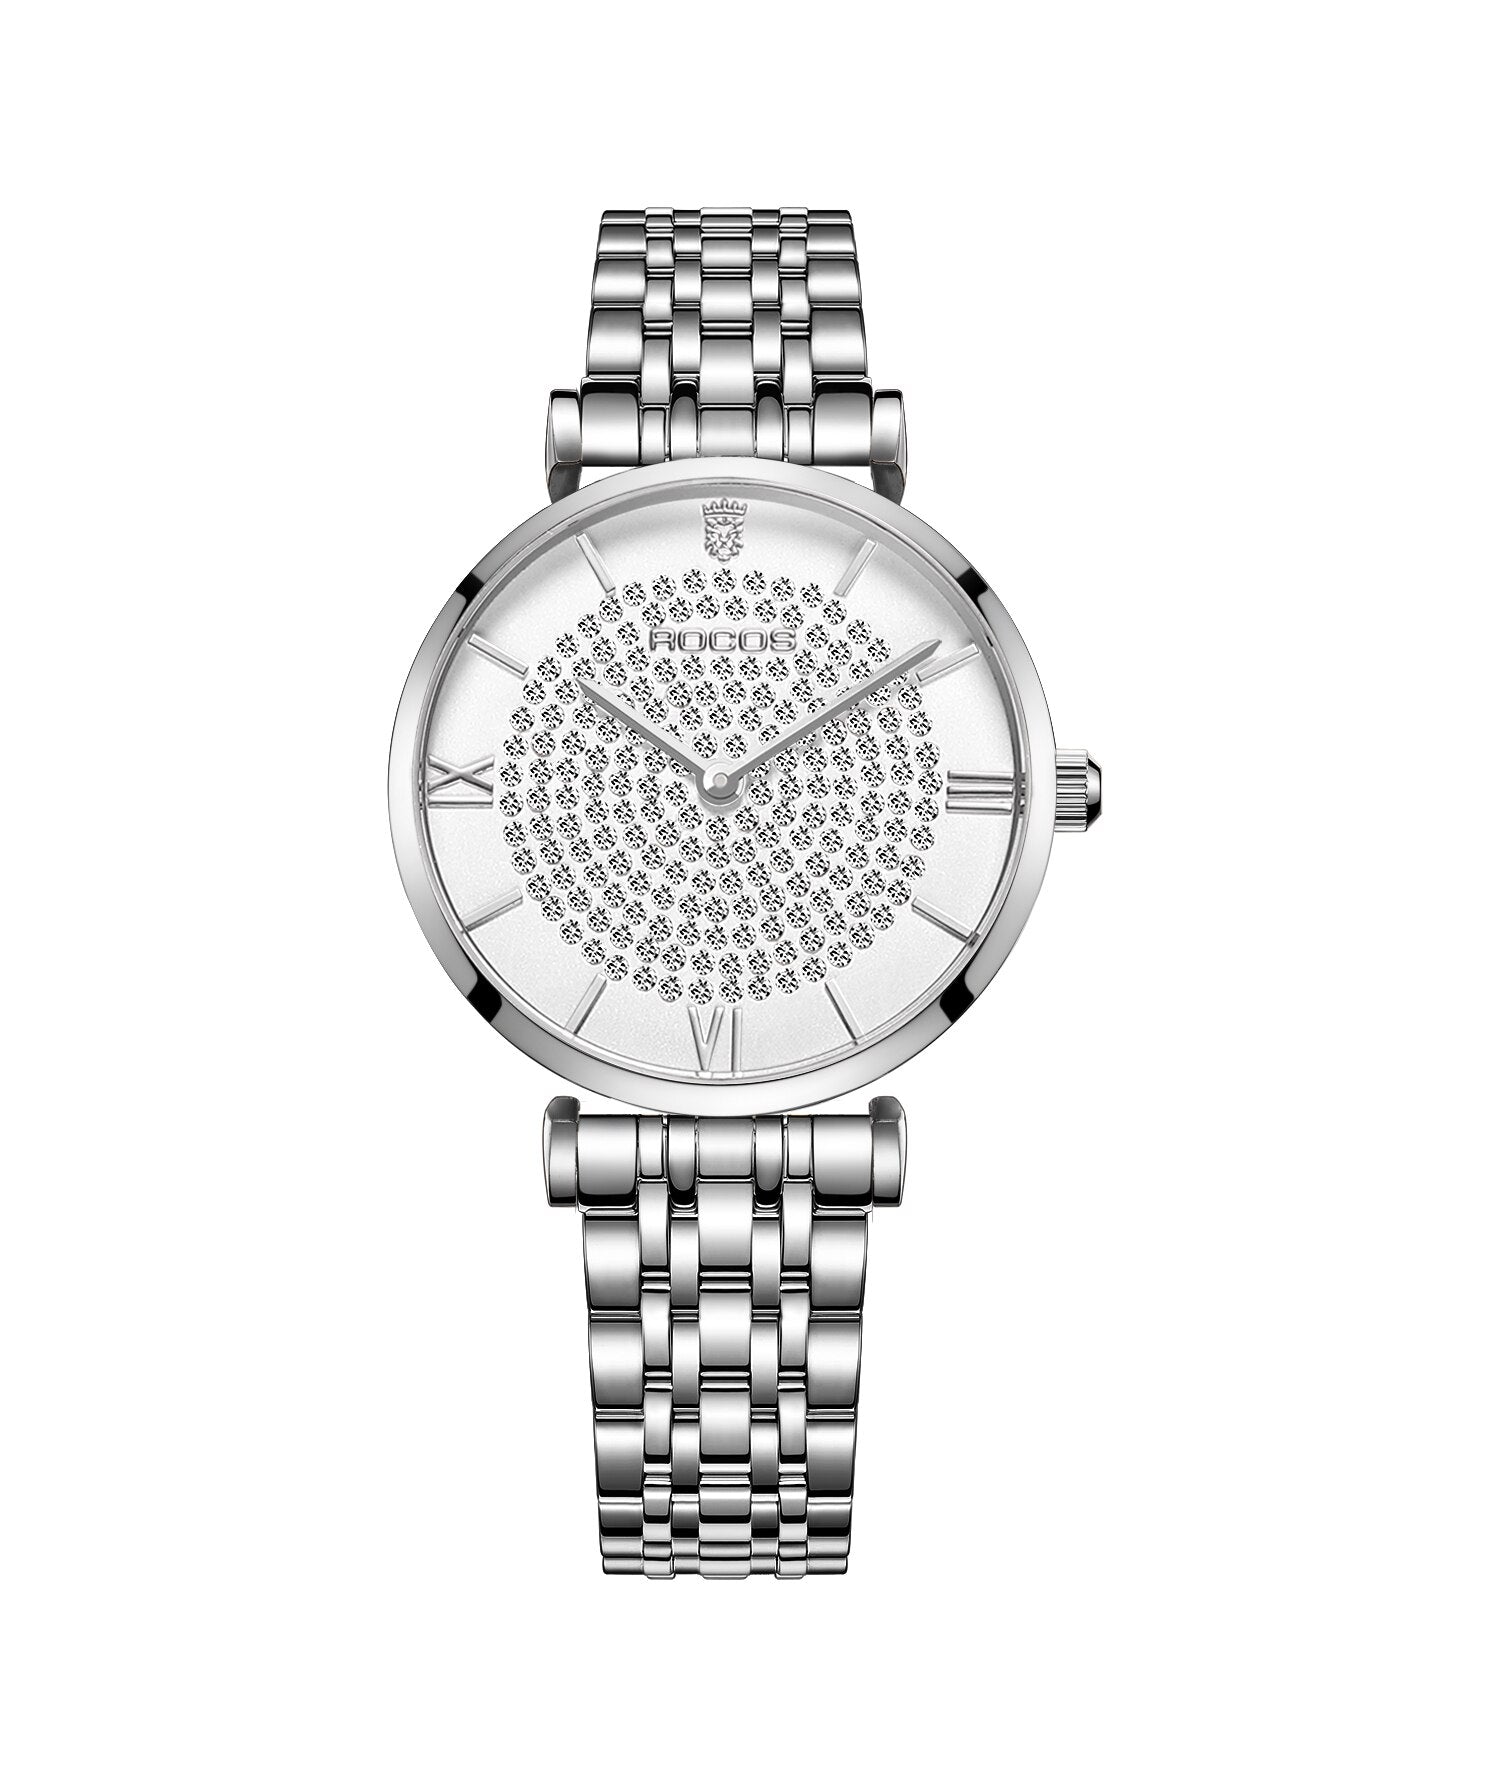 Ultra-Thin Quartz Watch Ultra-Thin Quartz Watch Ultra-Thin Quartz Watch